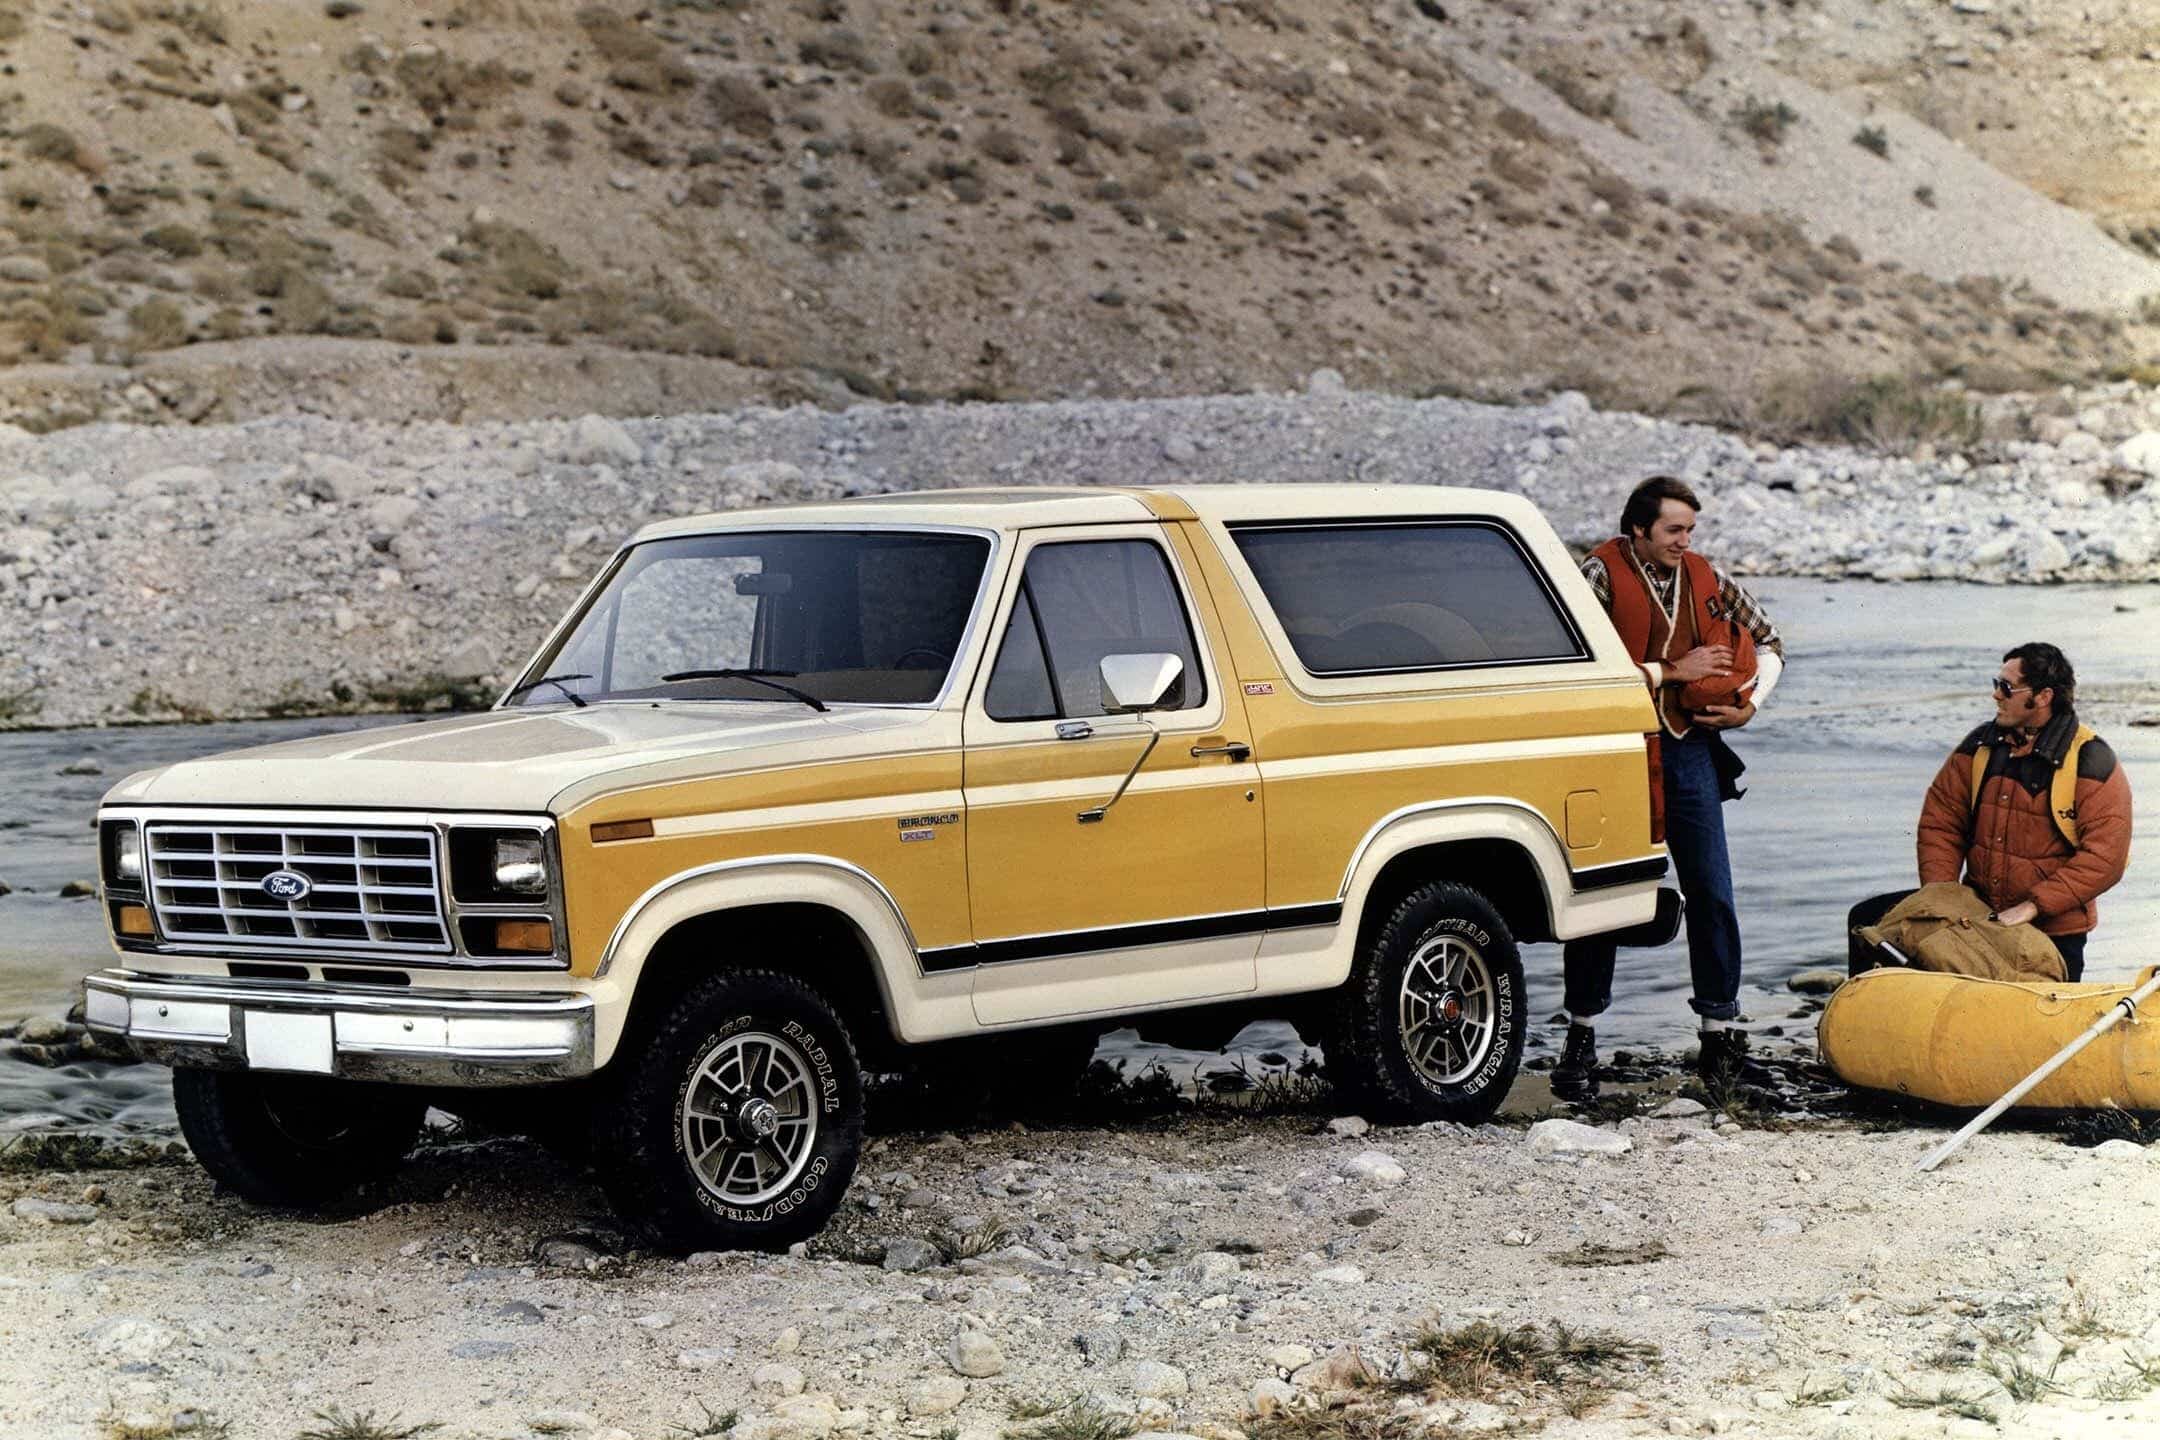 1984 Ford Bronco amarillo